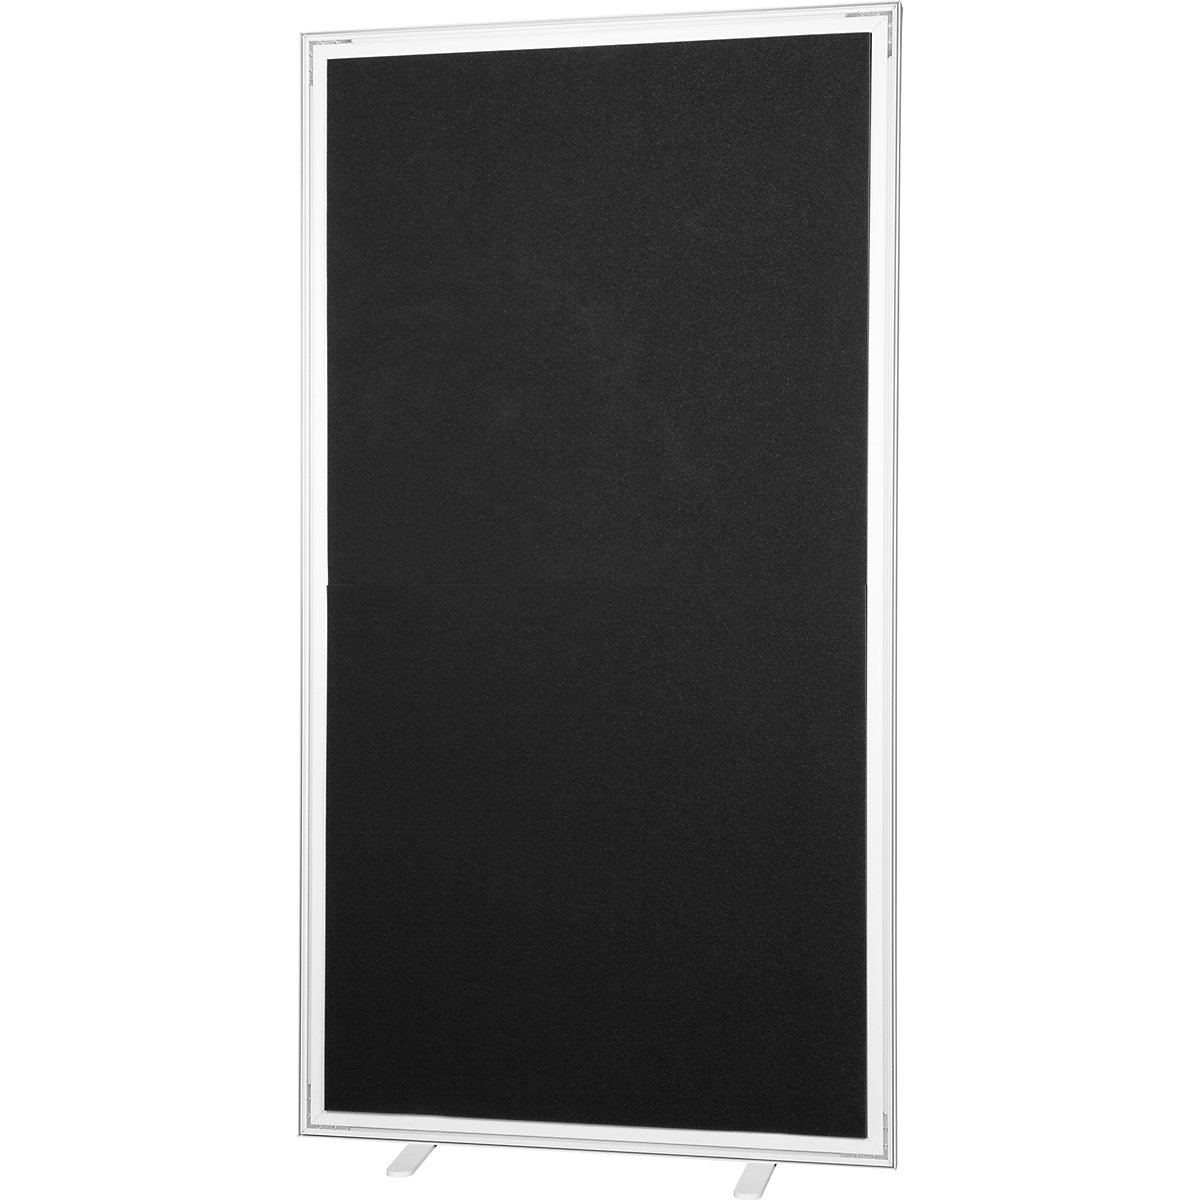 Dělicí stěna easyScreen, jednobarevná, s protihlukovou úpravou, černá, šířka 1600 mm-17